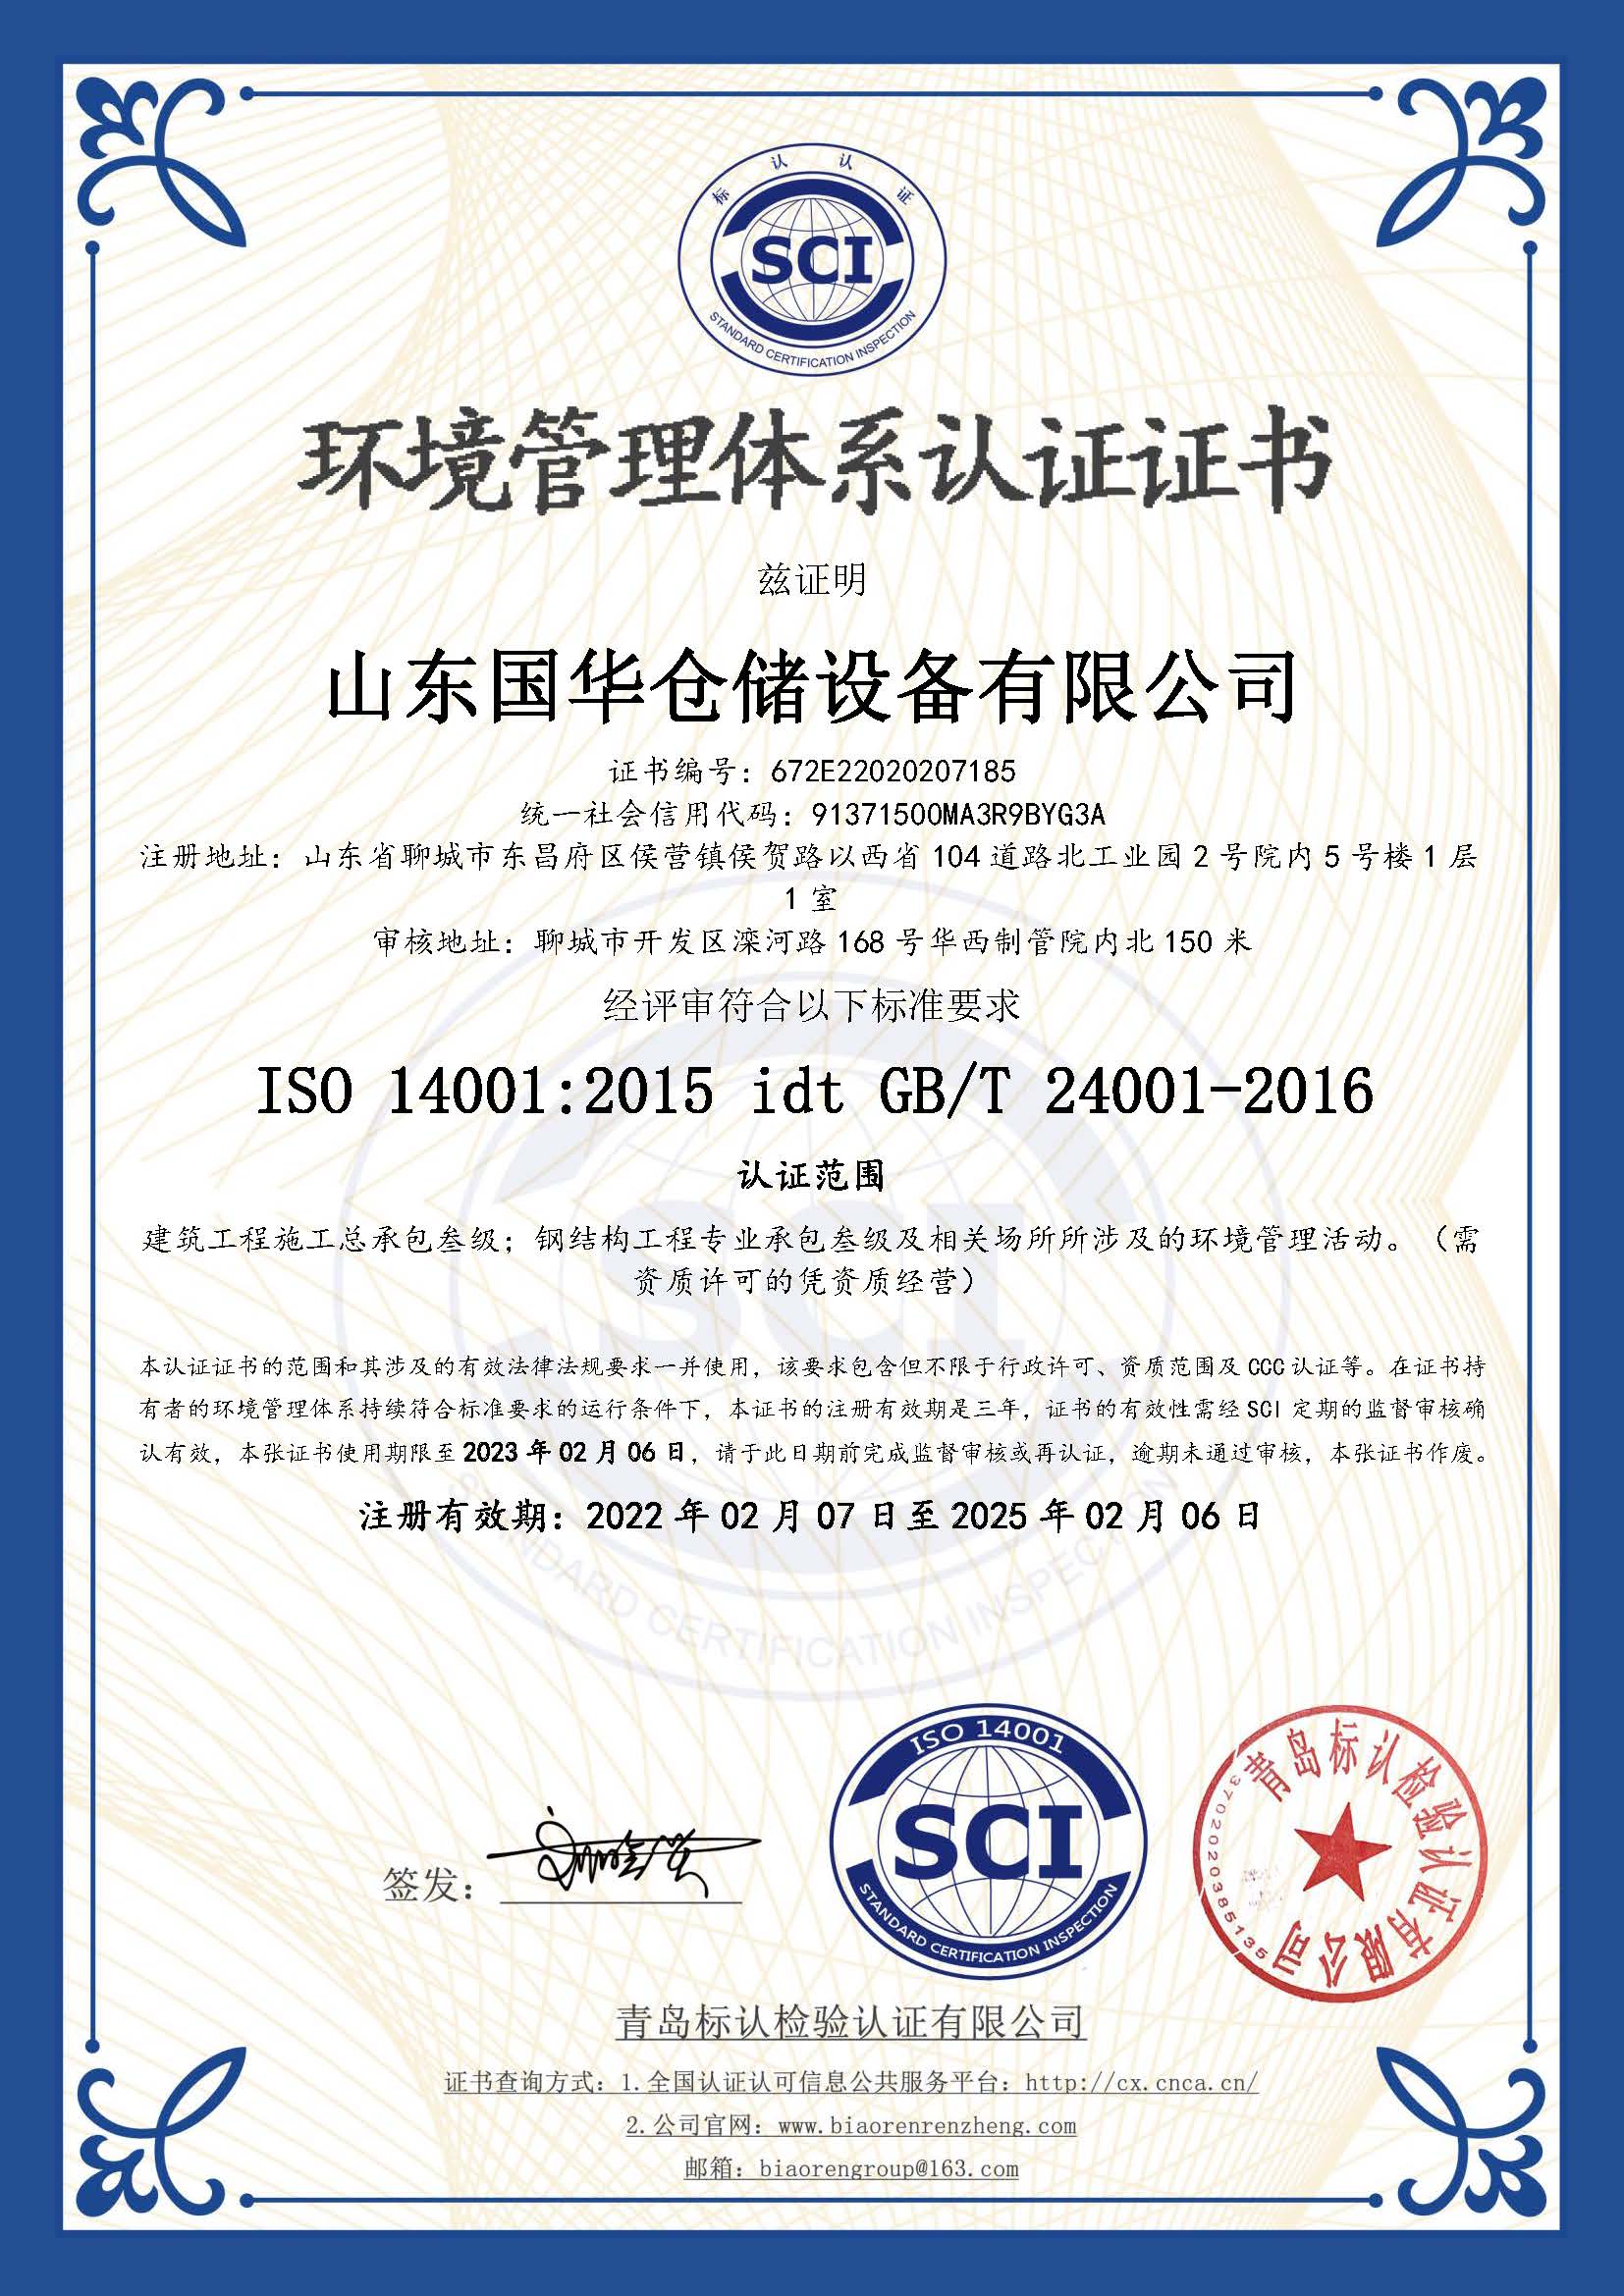 黄石钢板仓环境管理体系认证证书